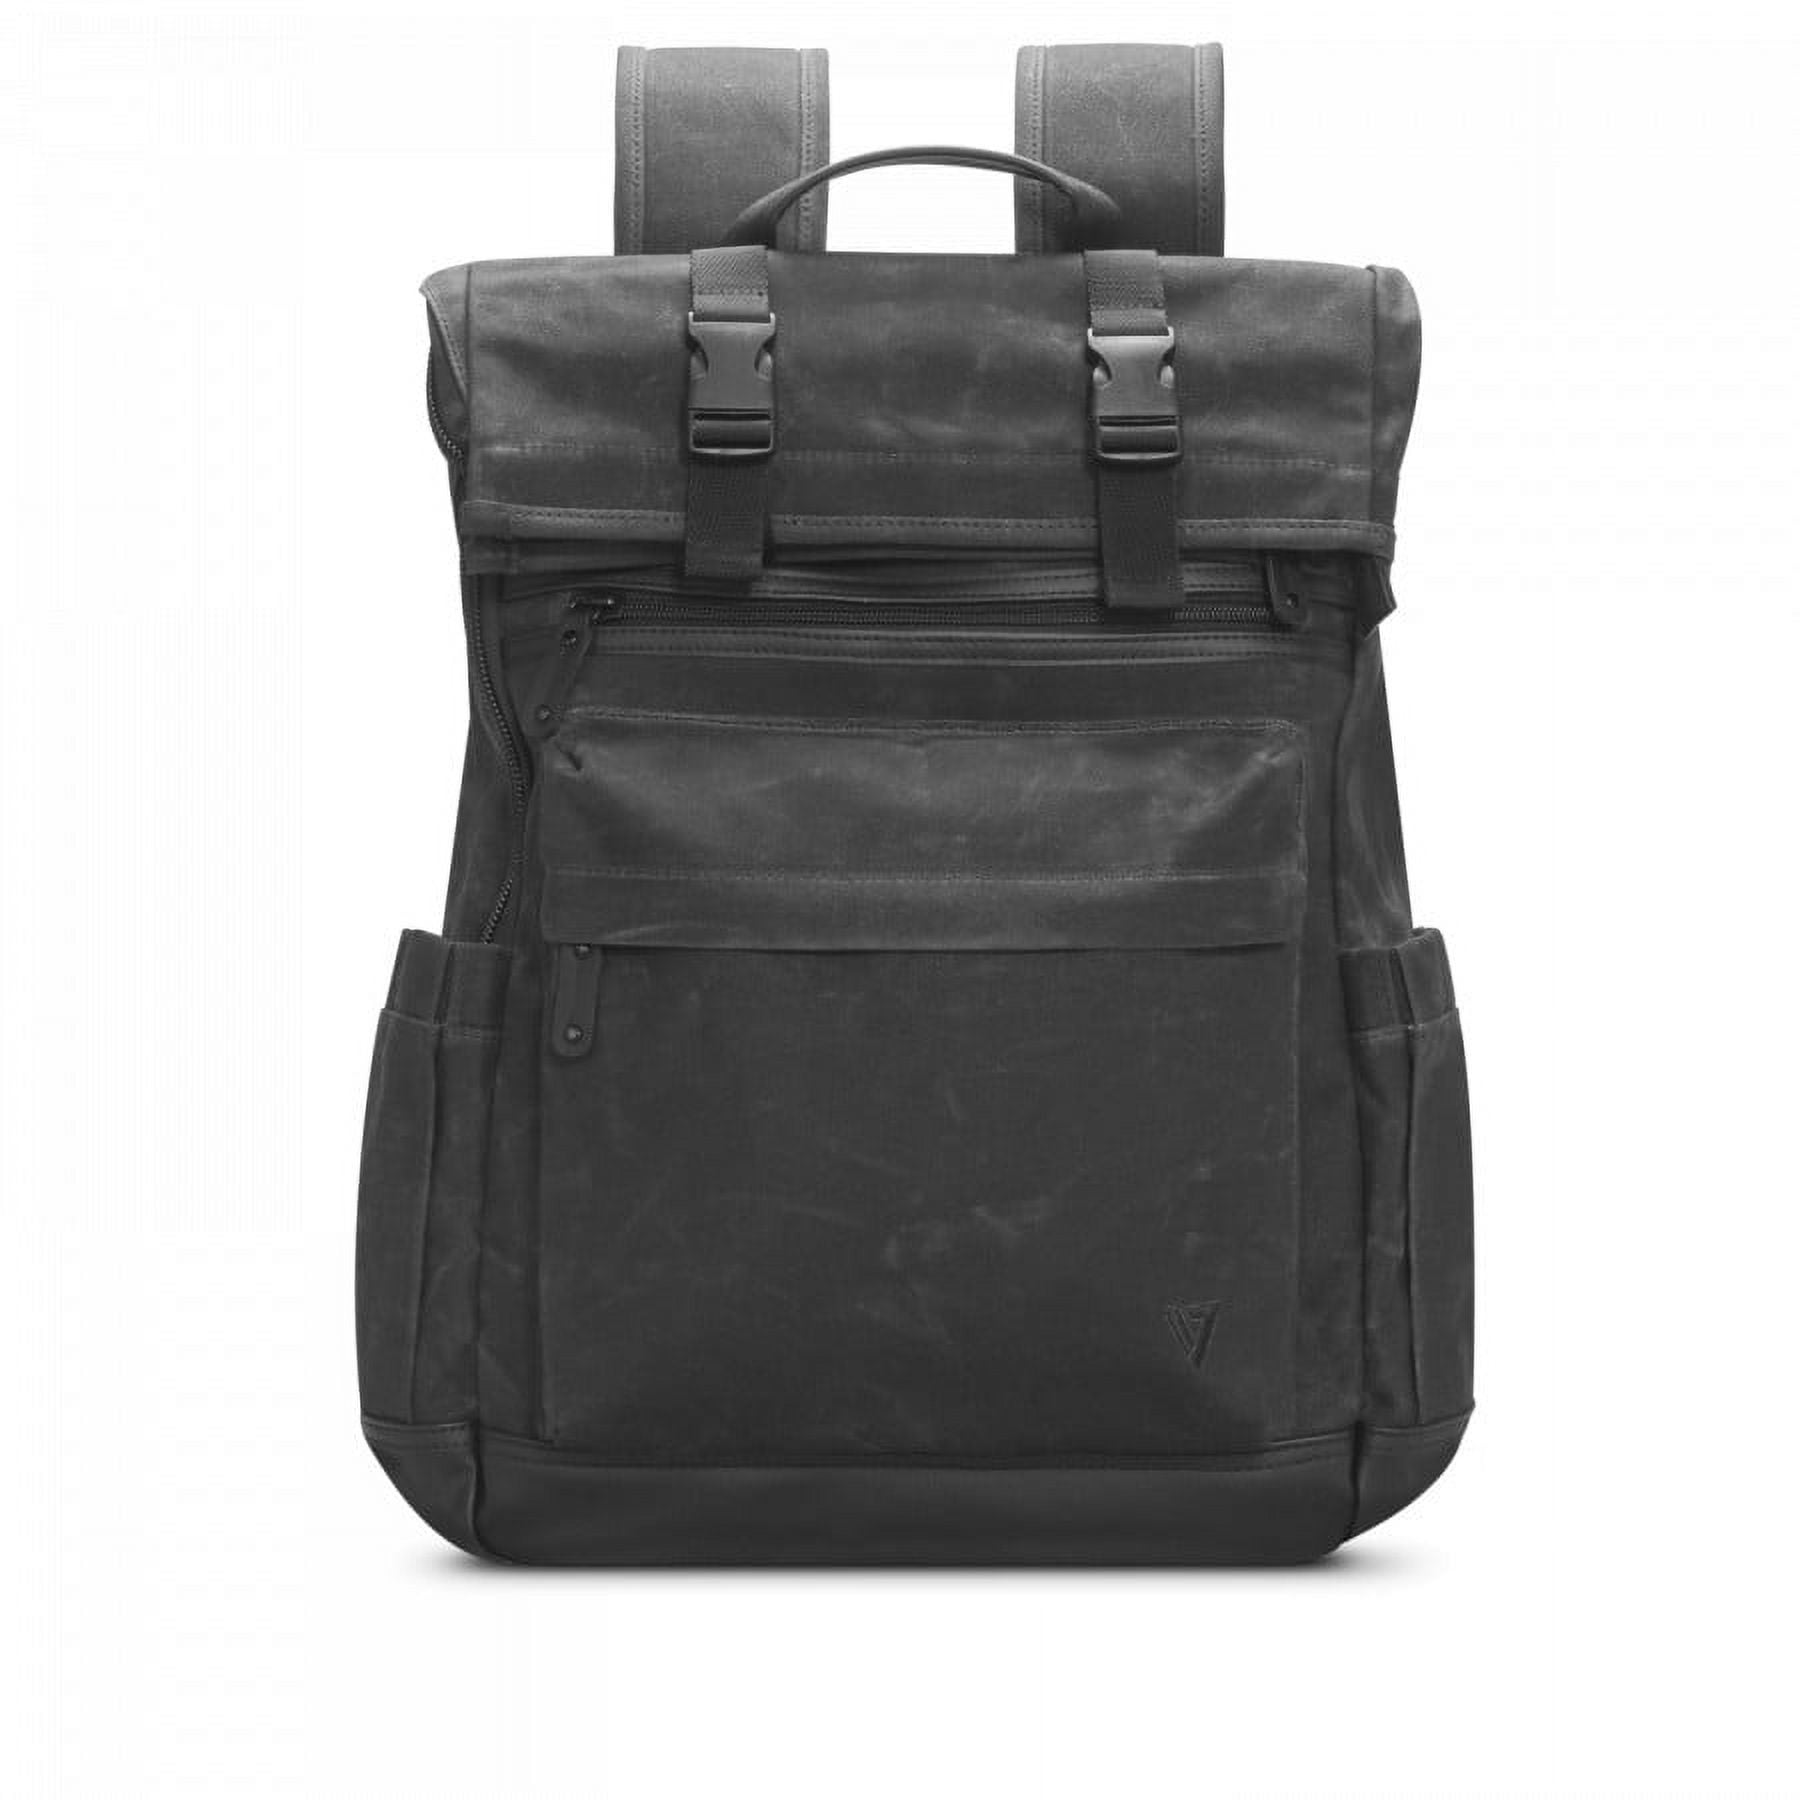 KROSER Rolling Laptop Bag Briefcase For 17.3 Laptop Overnight